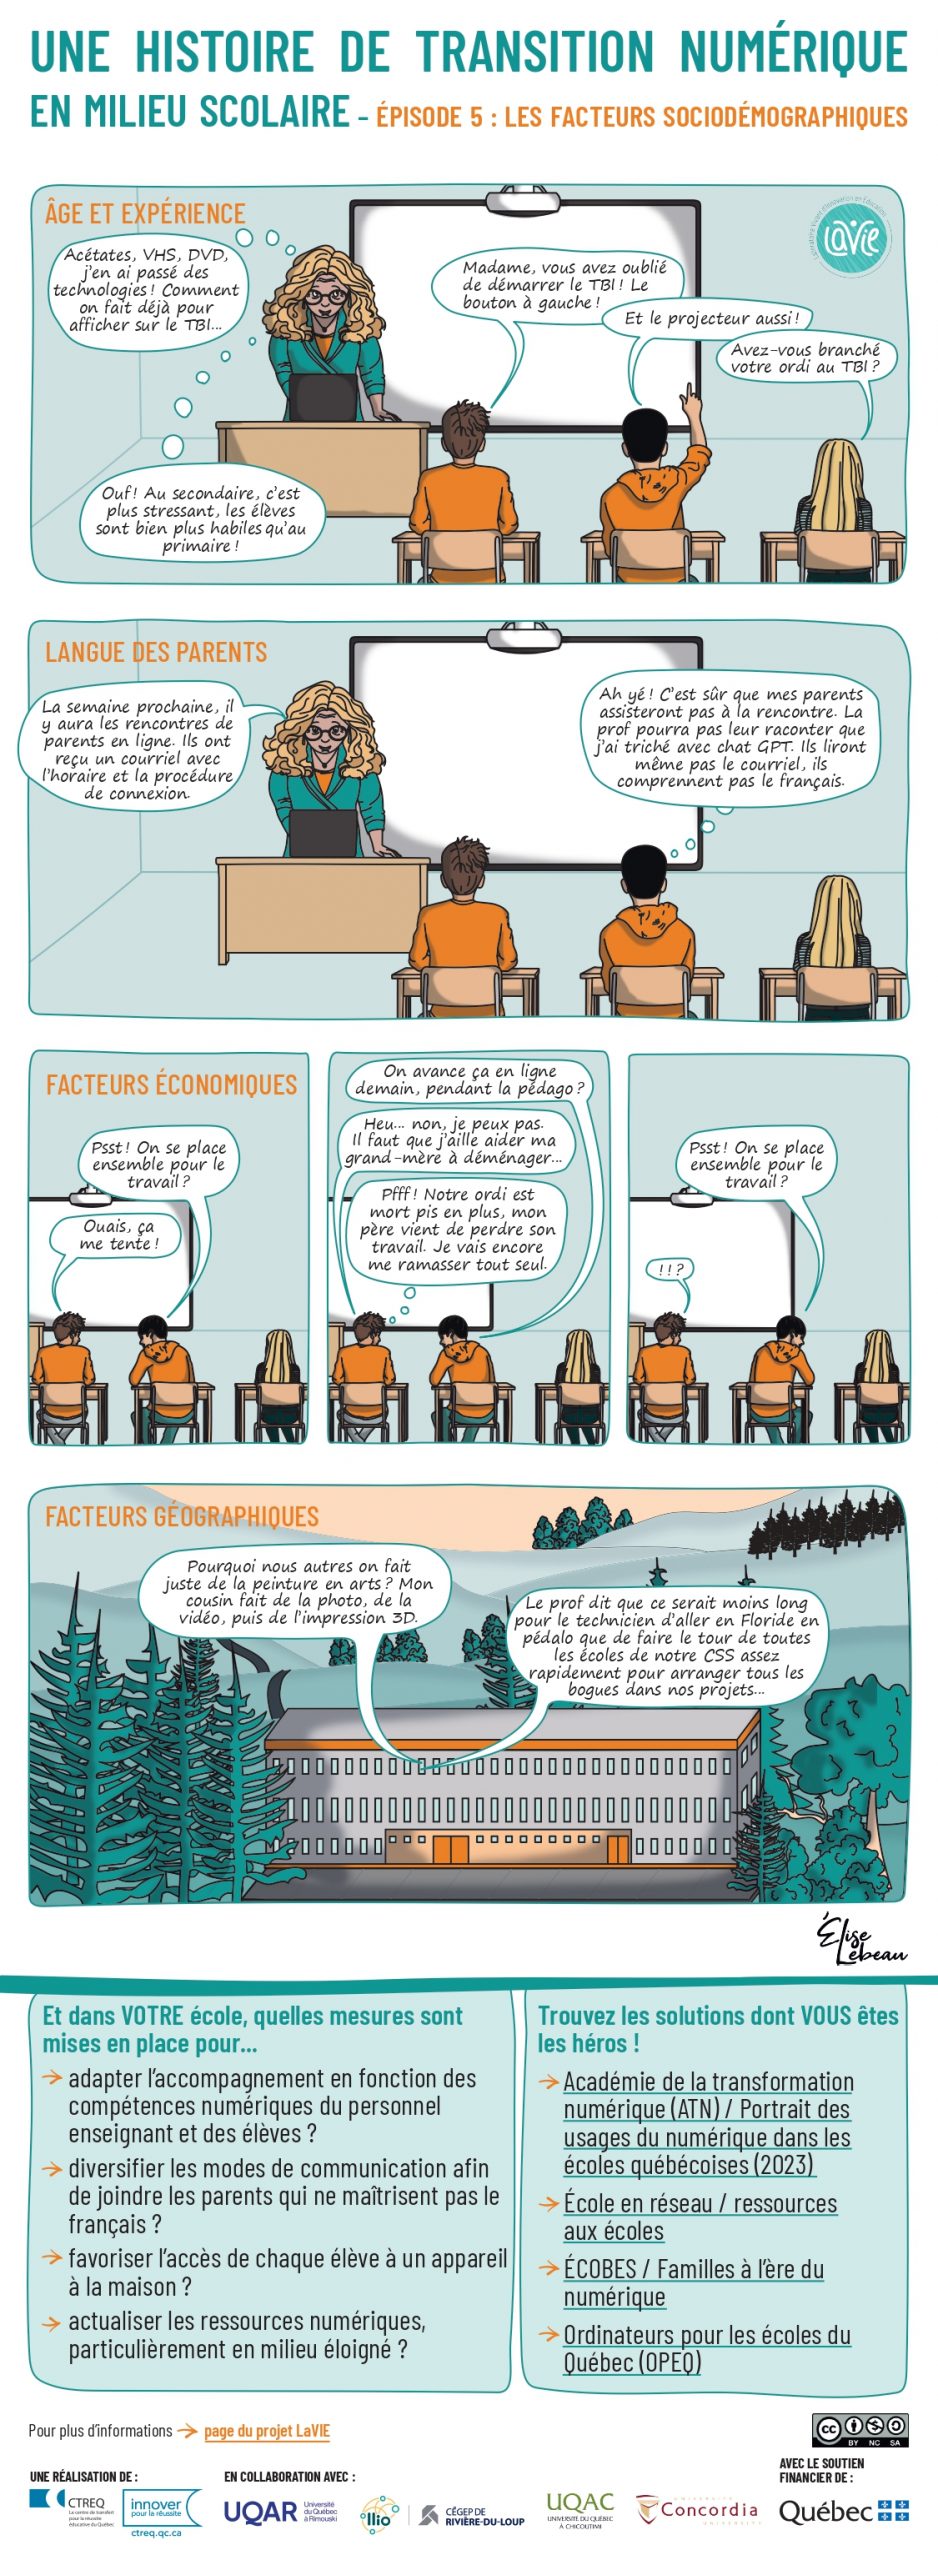 Bande dessinée sur les inégalités numériques en milieu scolaire